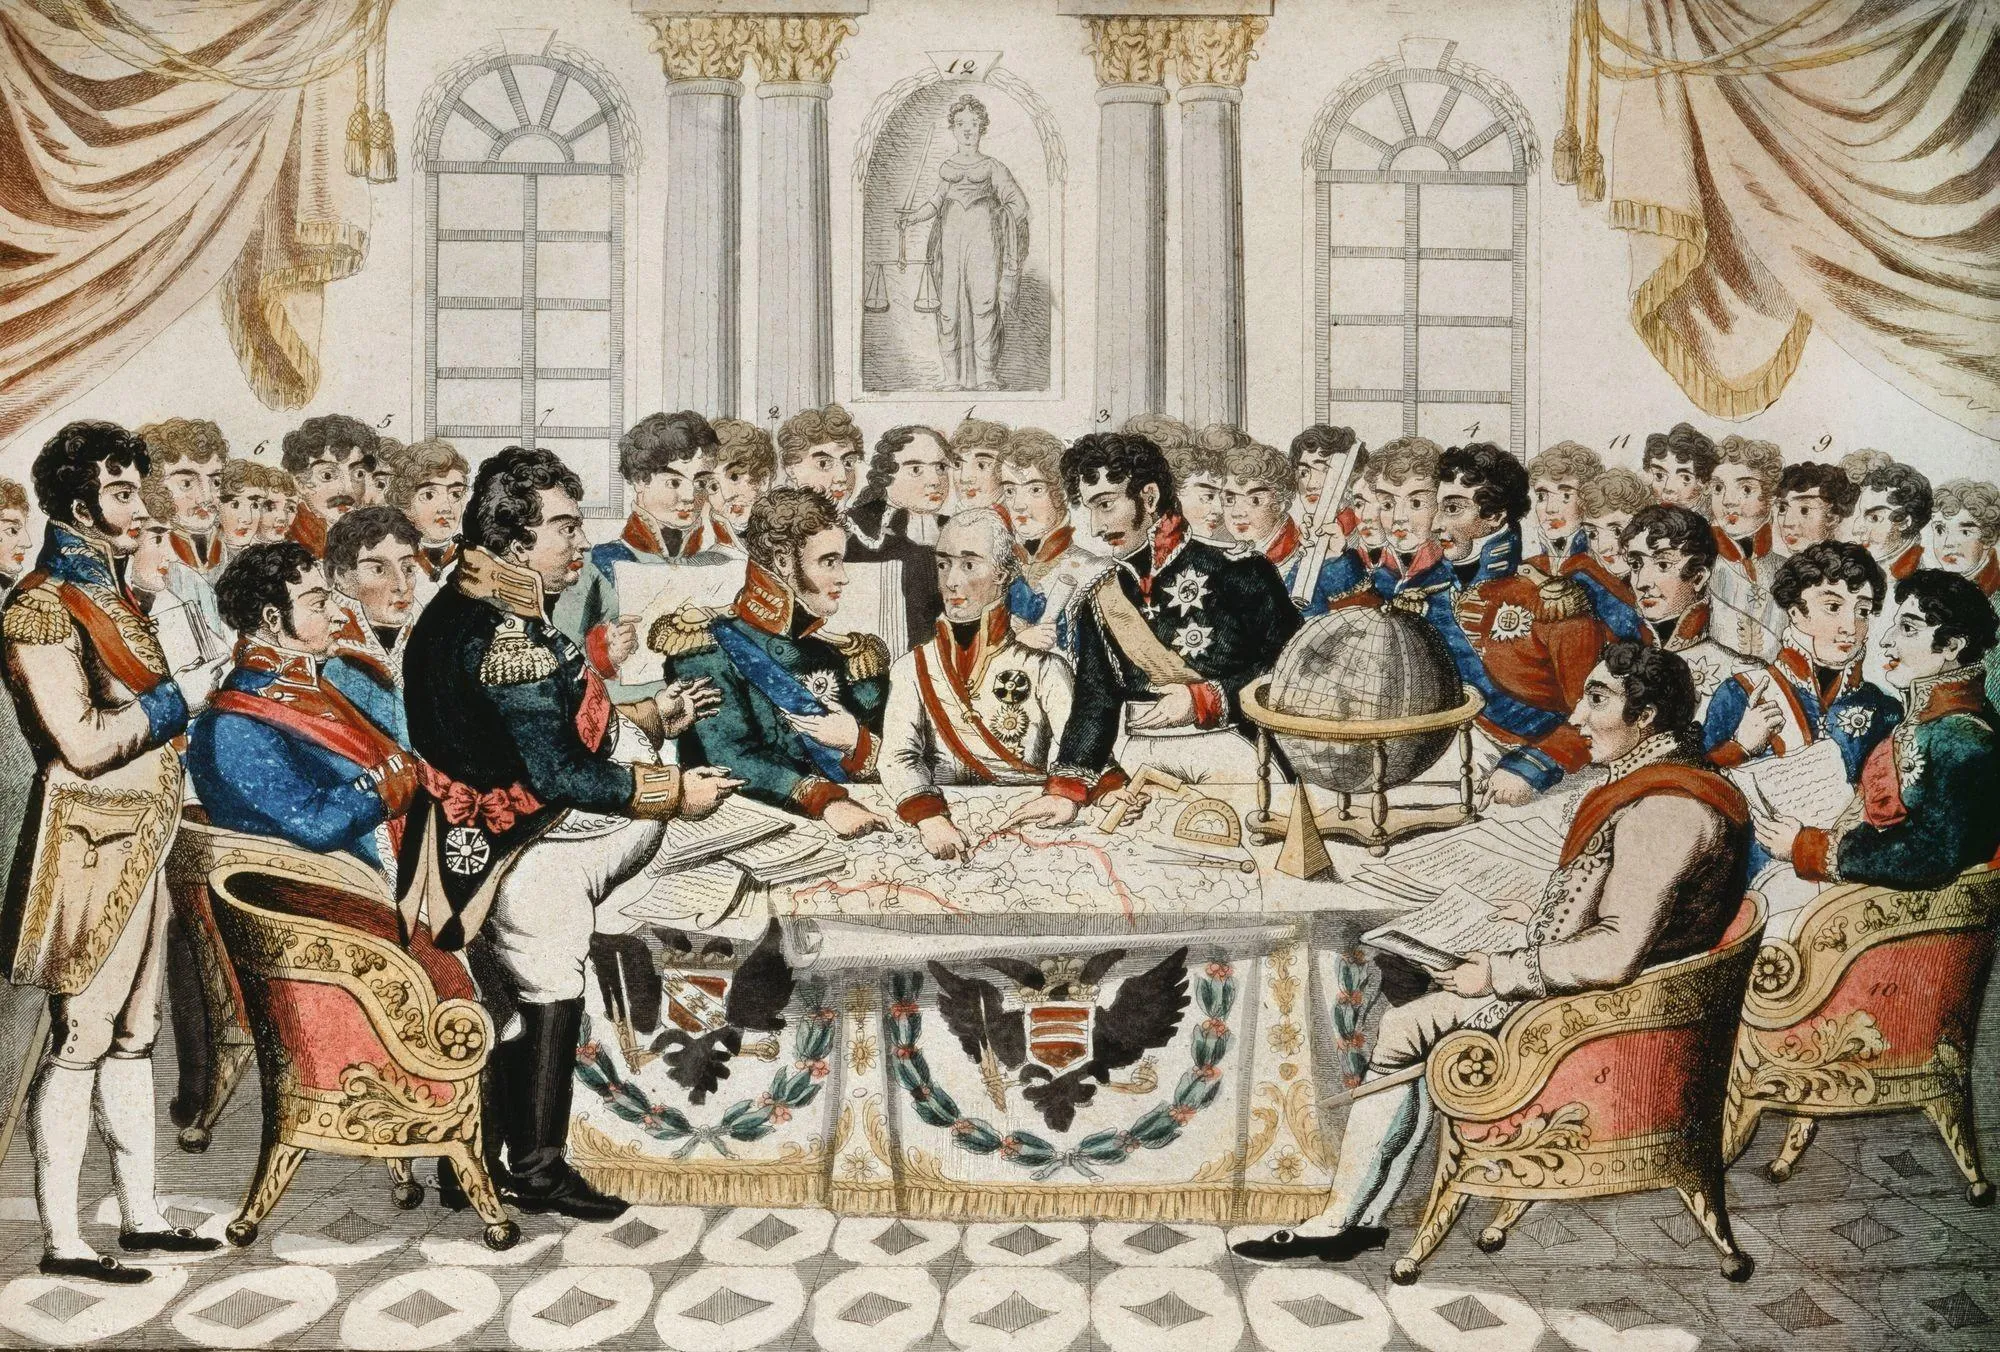 J. Zutz, Le Grand Congrès de Vienne pour la restauration de la paix et du droit en Europe, v. 1815, eau-forte coloriée, 17,9 x 24,5 cm, Museum der Stadt, Vienne.